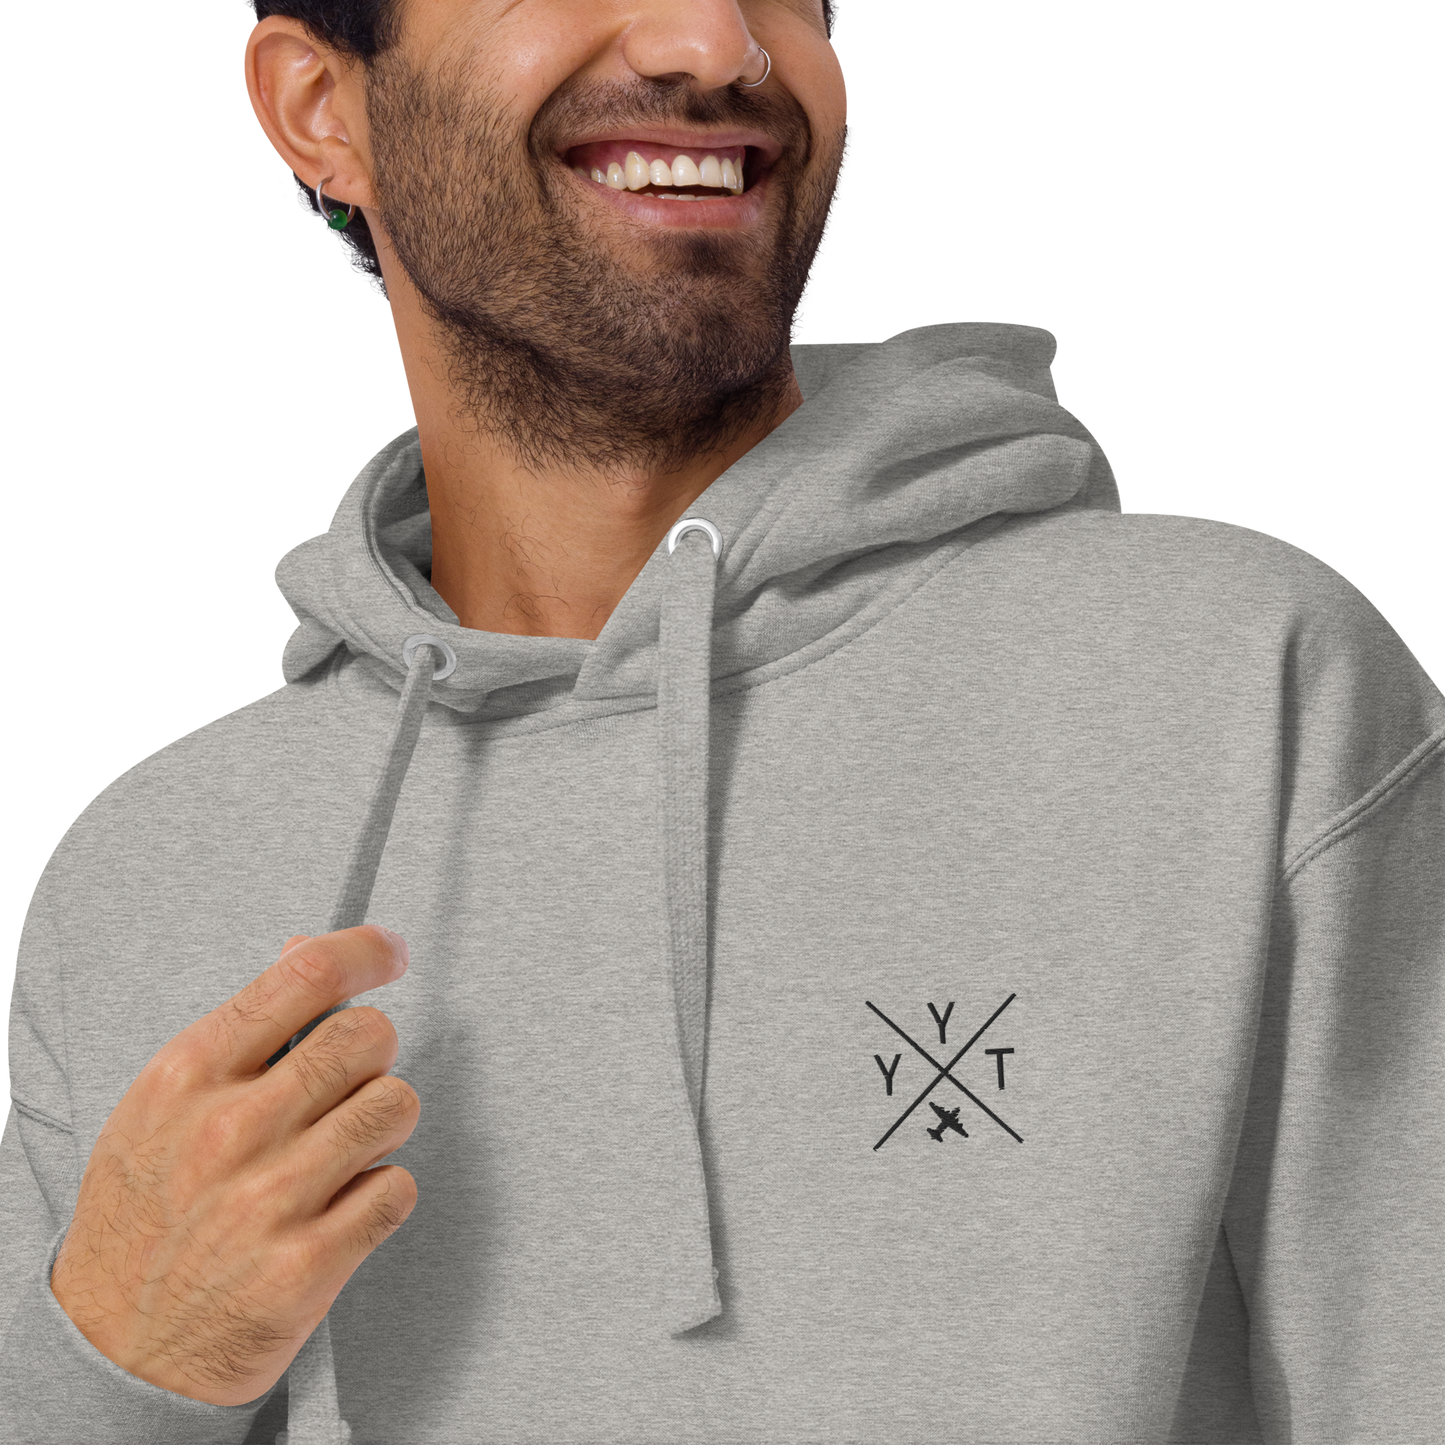 Crossed-X Premium Hoodie • YYT St. John's • YHM Designs - Image 15